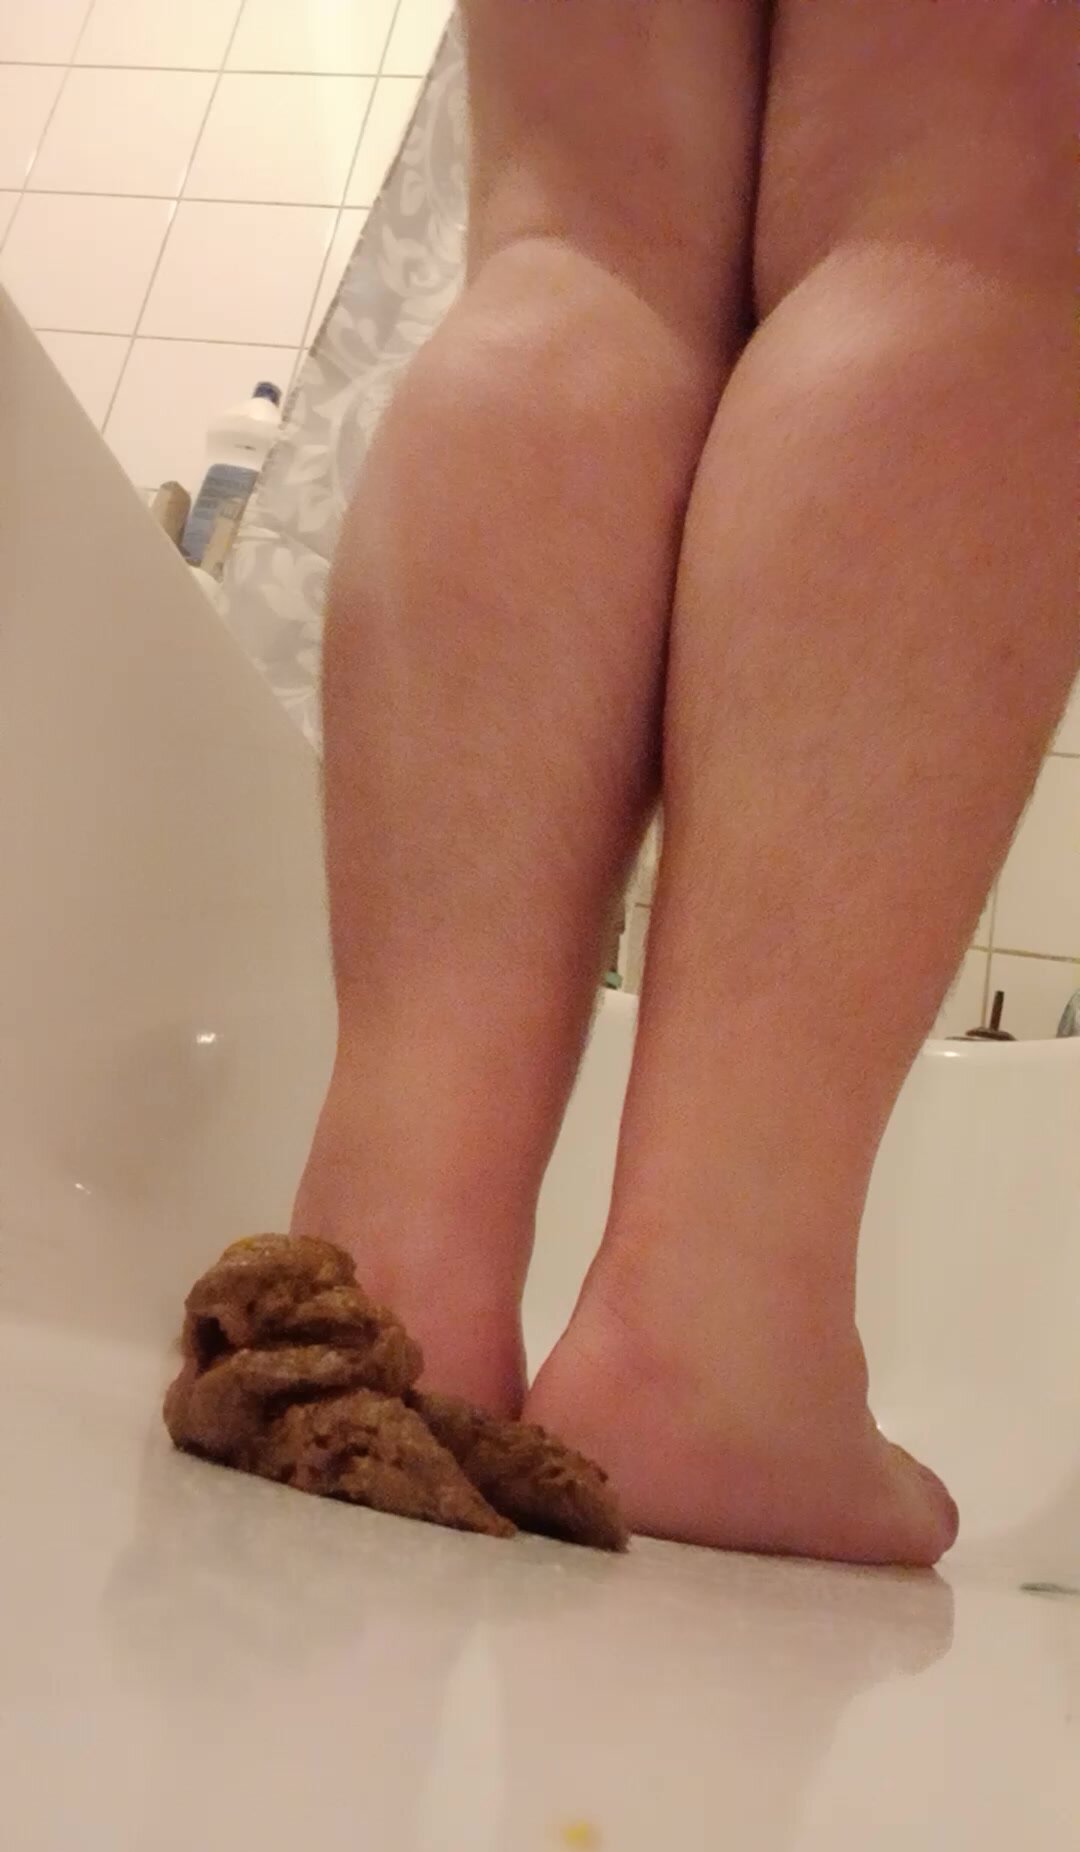 Bear barefoot in poop